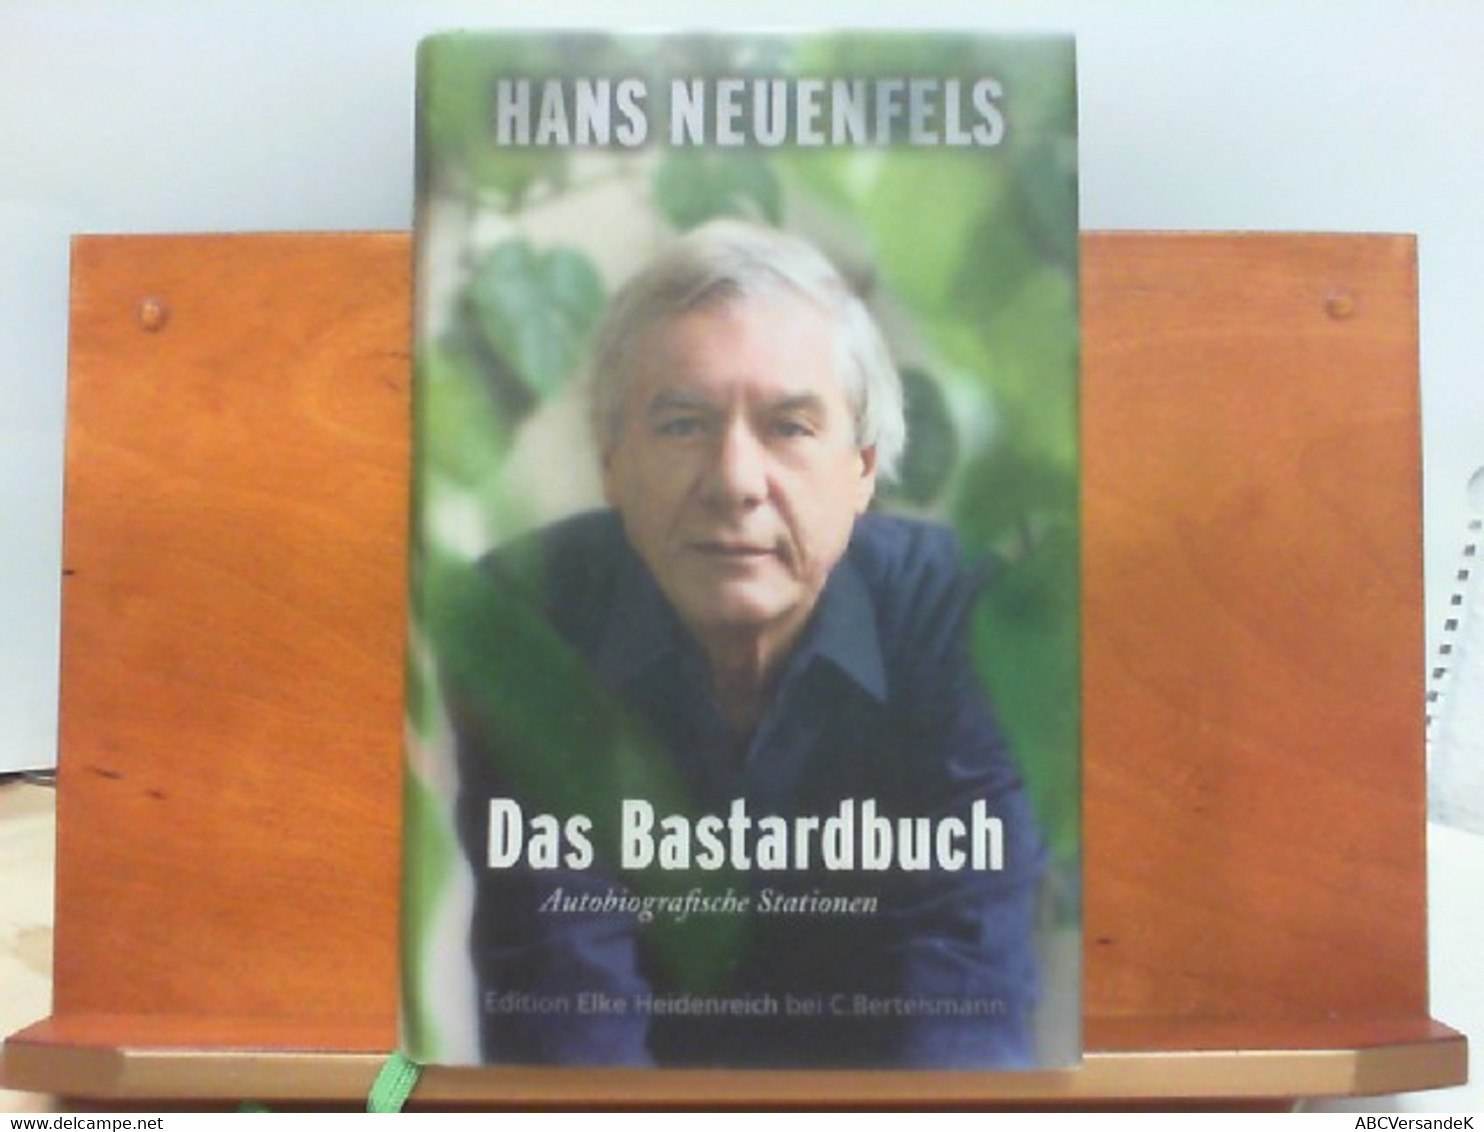 Das Bastardbuch - Autobiografische Stationen - Biographien & Memoiren